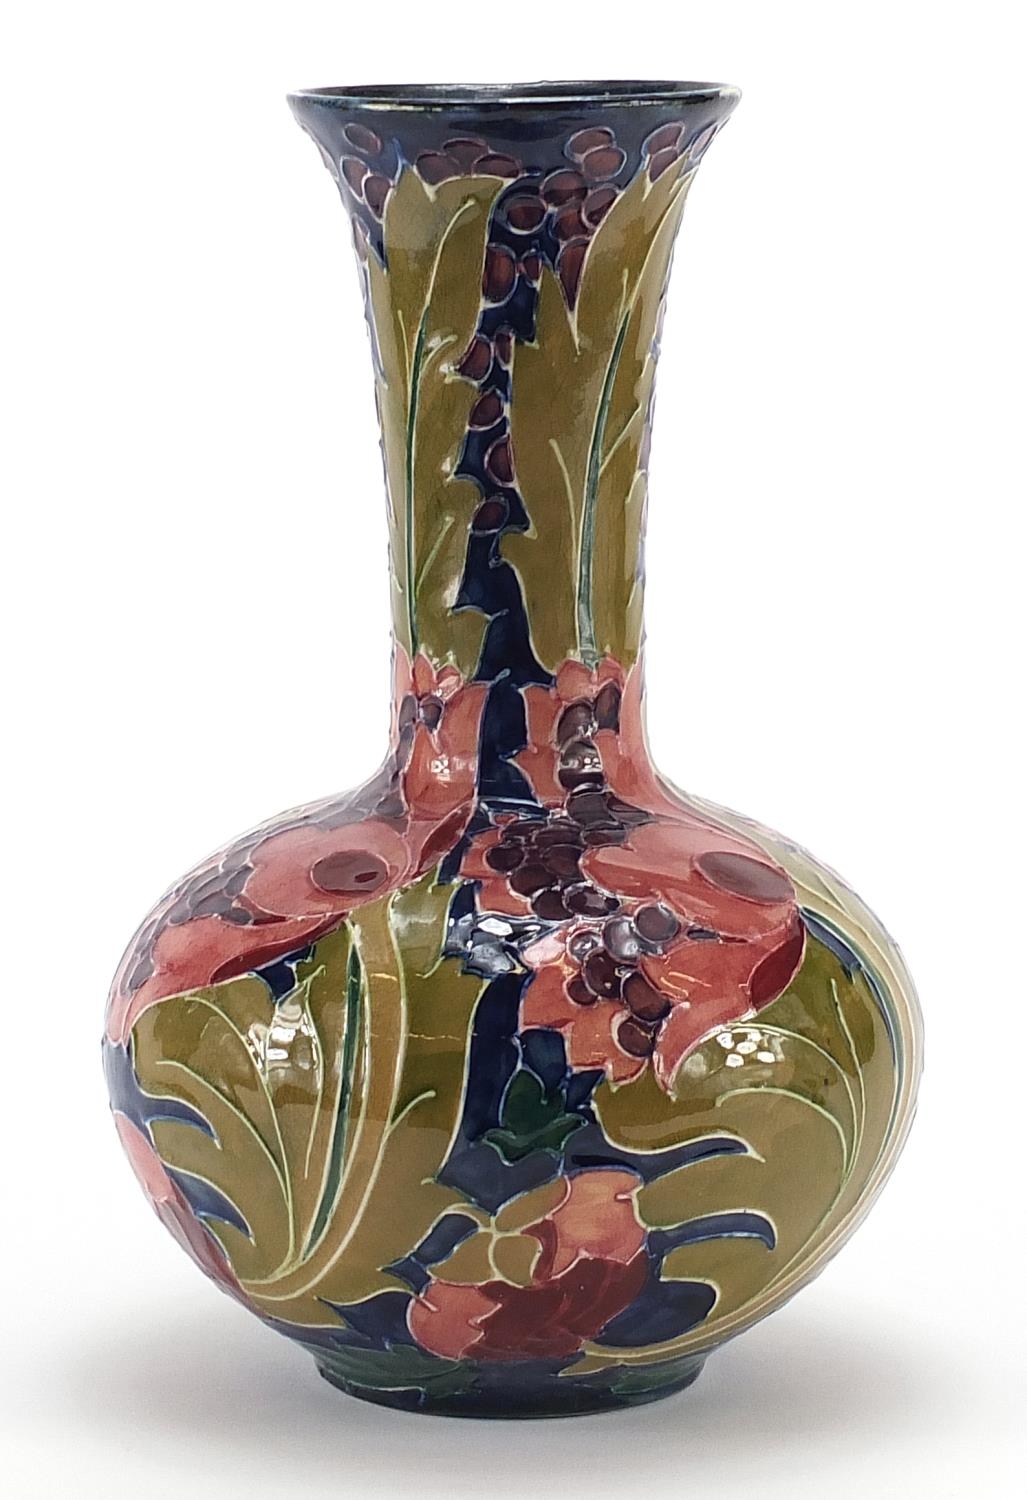 Charlotte Reid for Bursley Ware, Seed Poppy pattern vase, 28cm high - Image 2 of 3